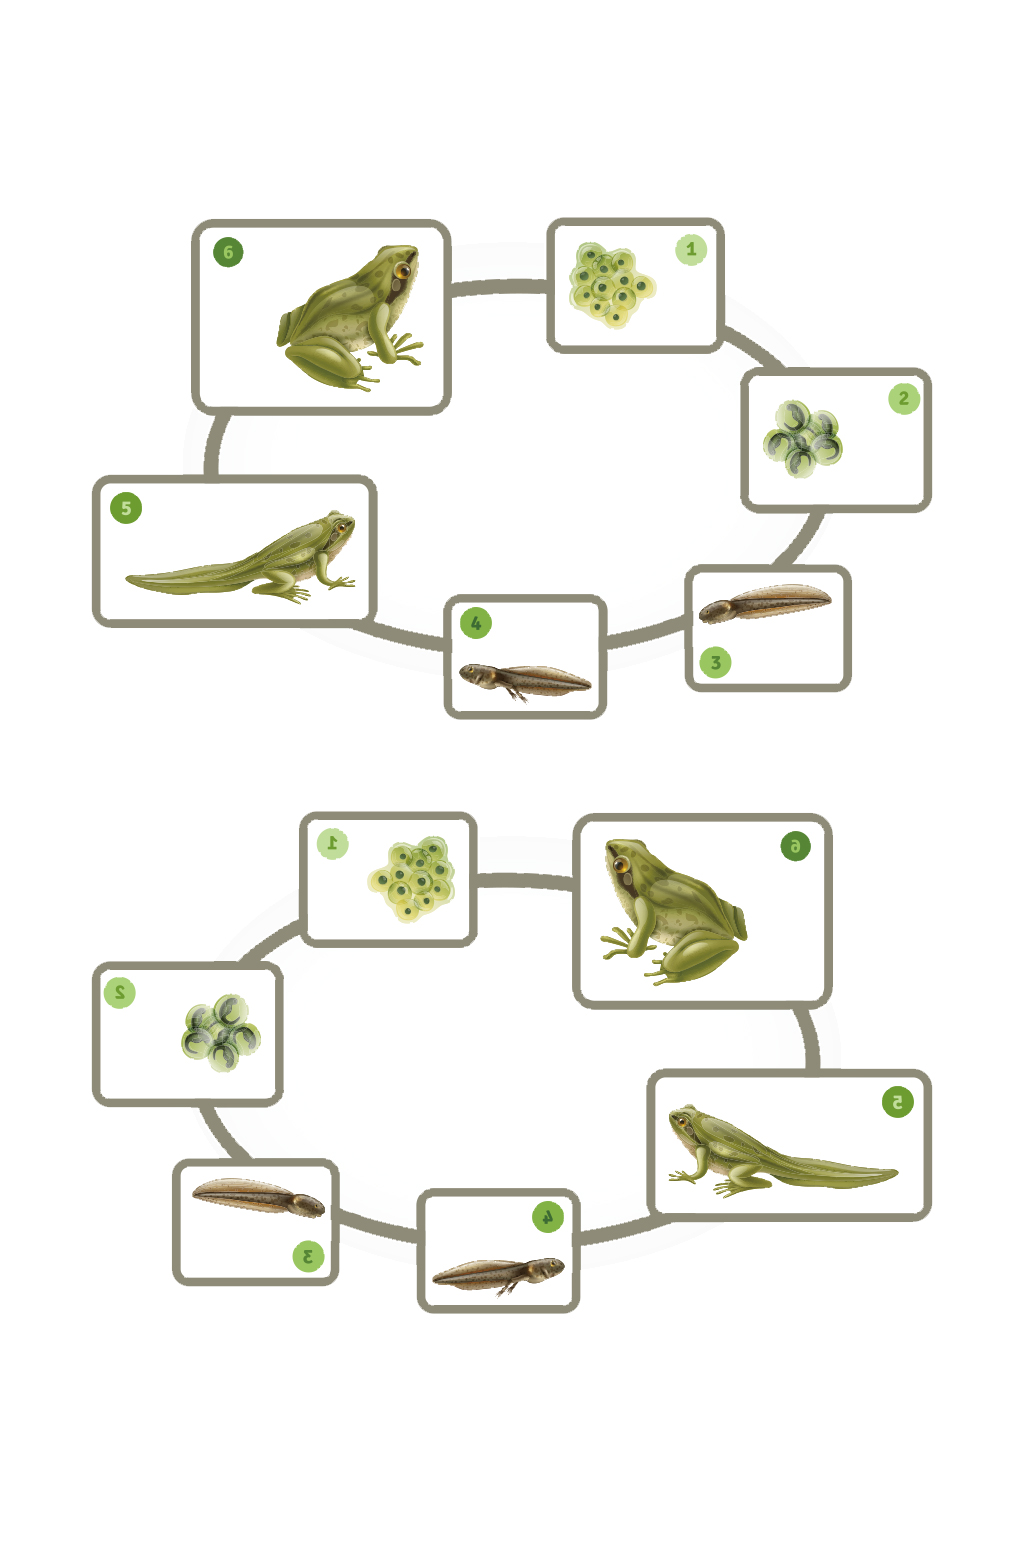 青蛙生命周期真实信息图